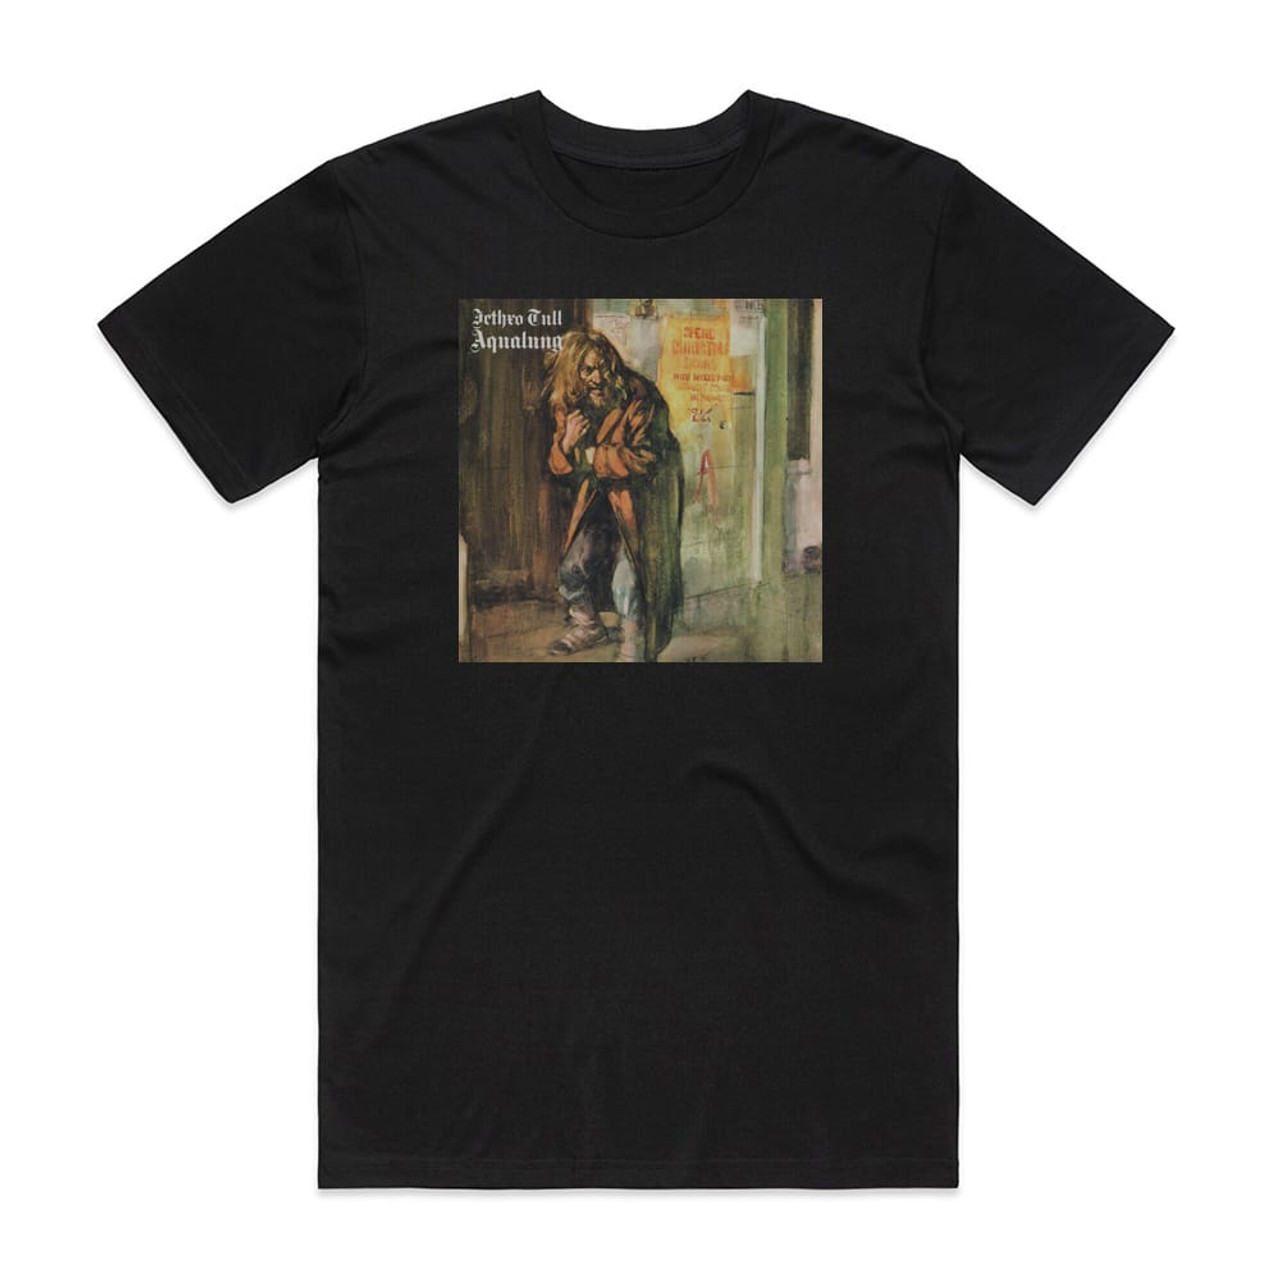 Jethro Tull Aqualung Album Cover T-Shirt Black